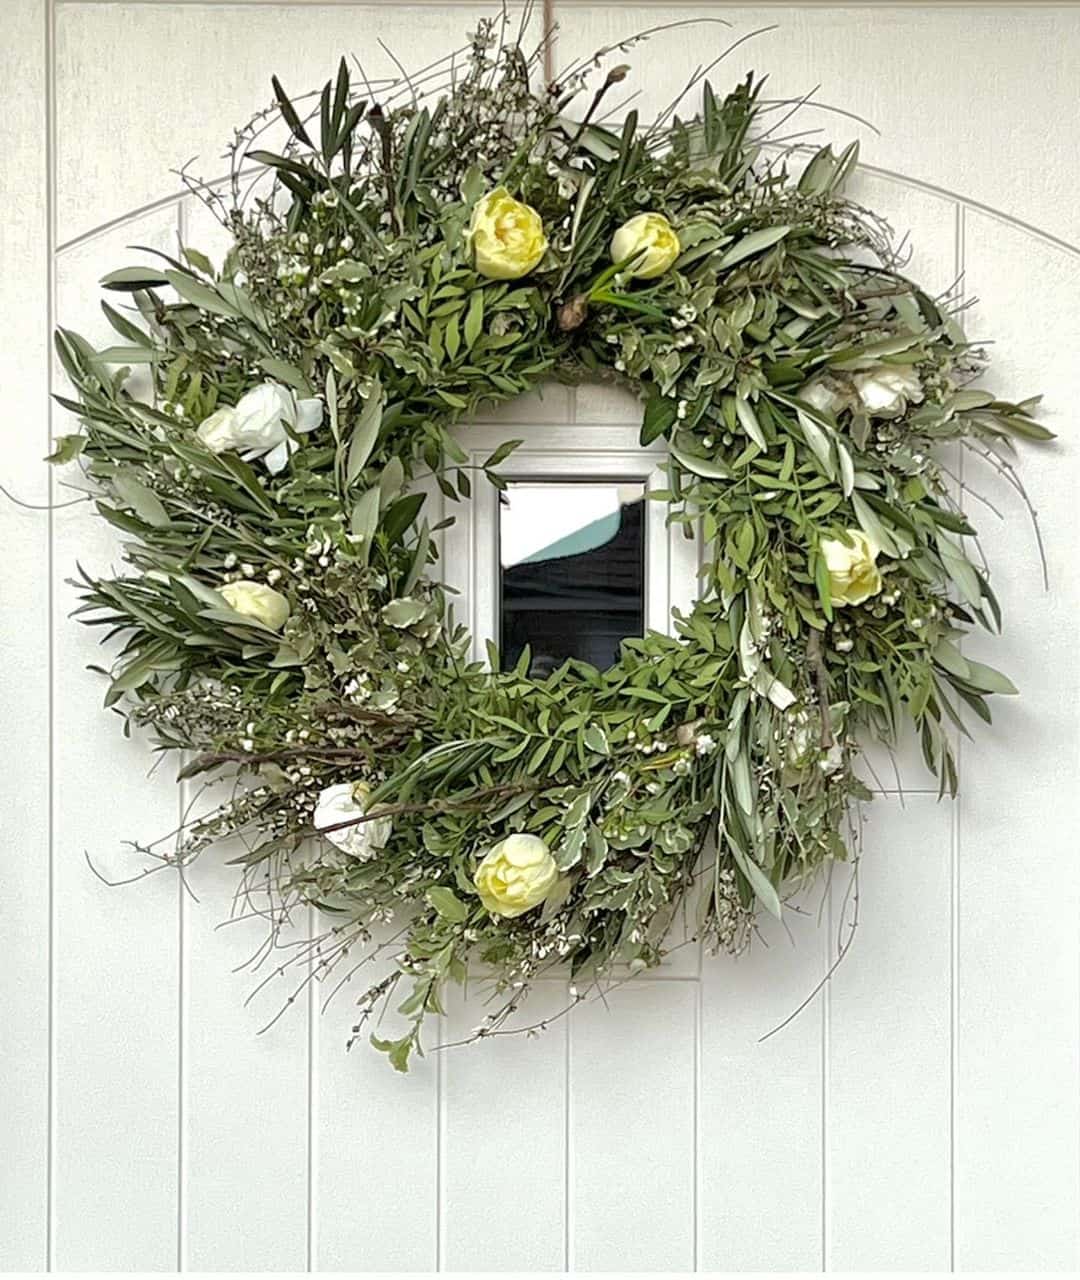 35 Lovely Summer Wreath Ideas for Seasonal Decoration